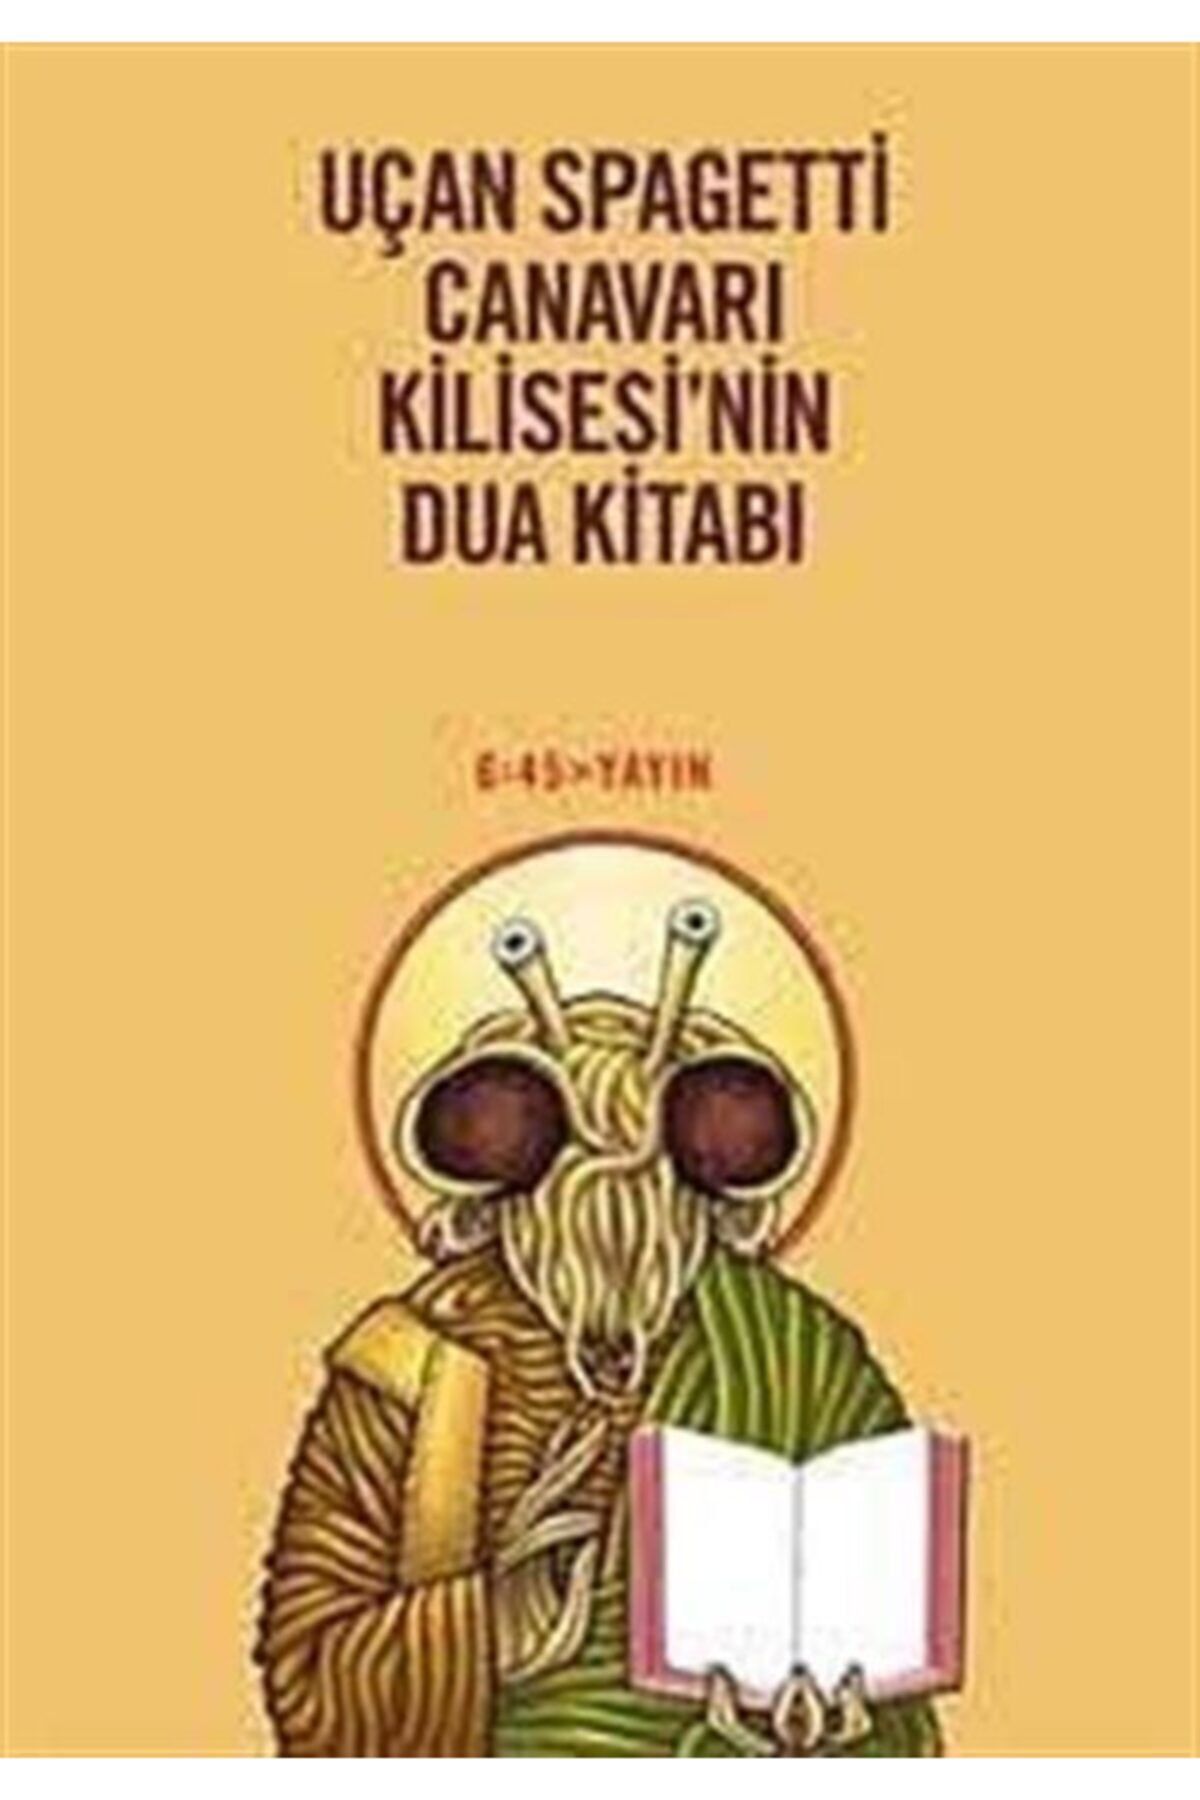 Altıkırkbeş Yayınları Uçan Spagetti Canavarı Kilisesi’nin Dua Kitabı